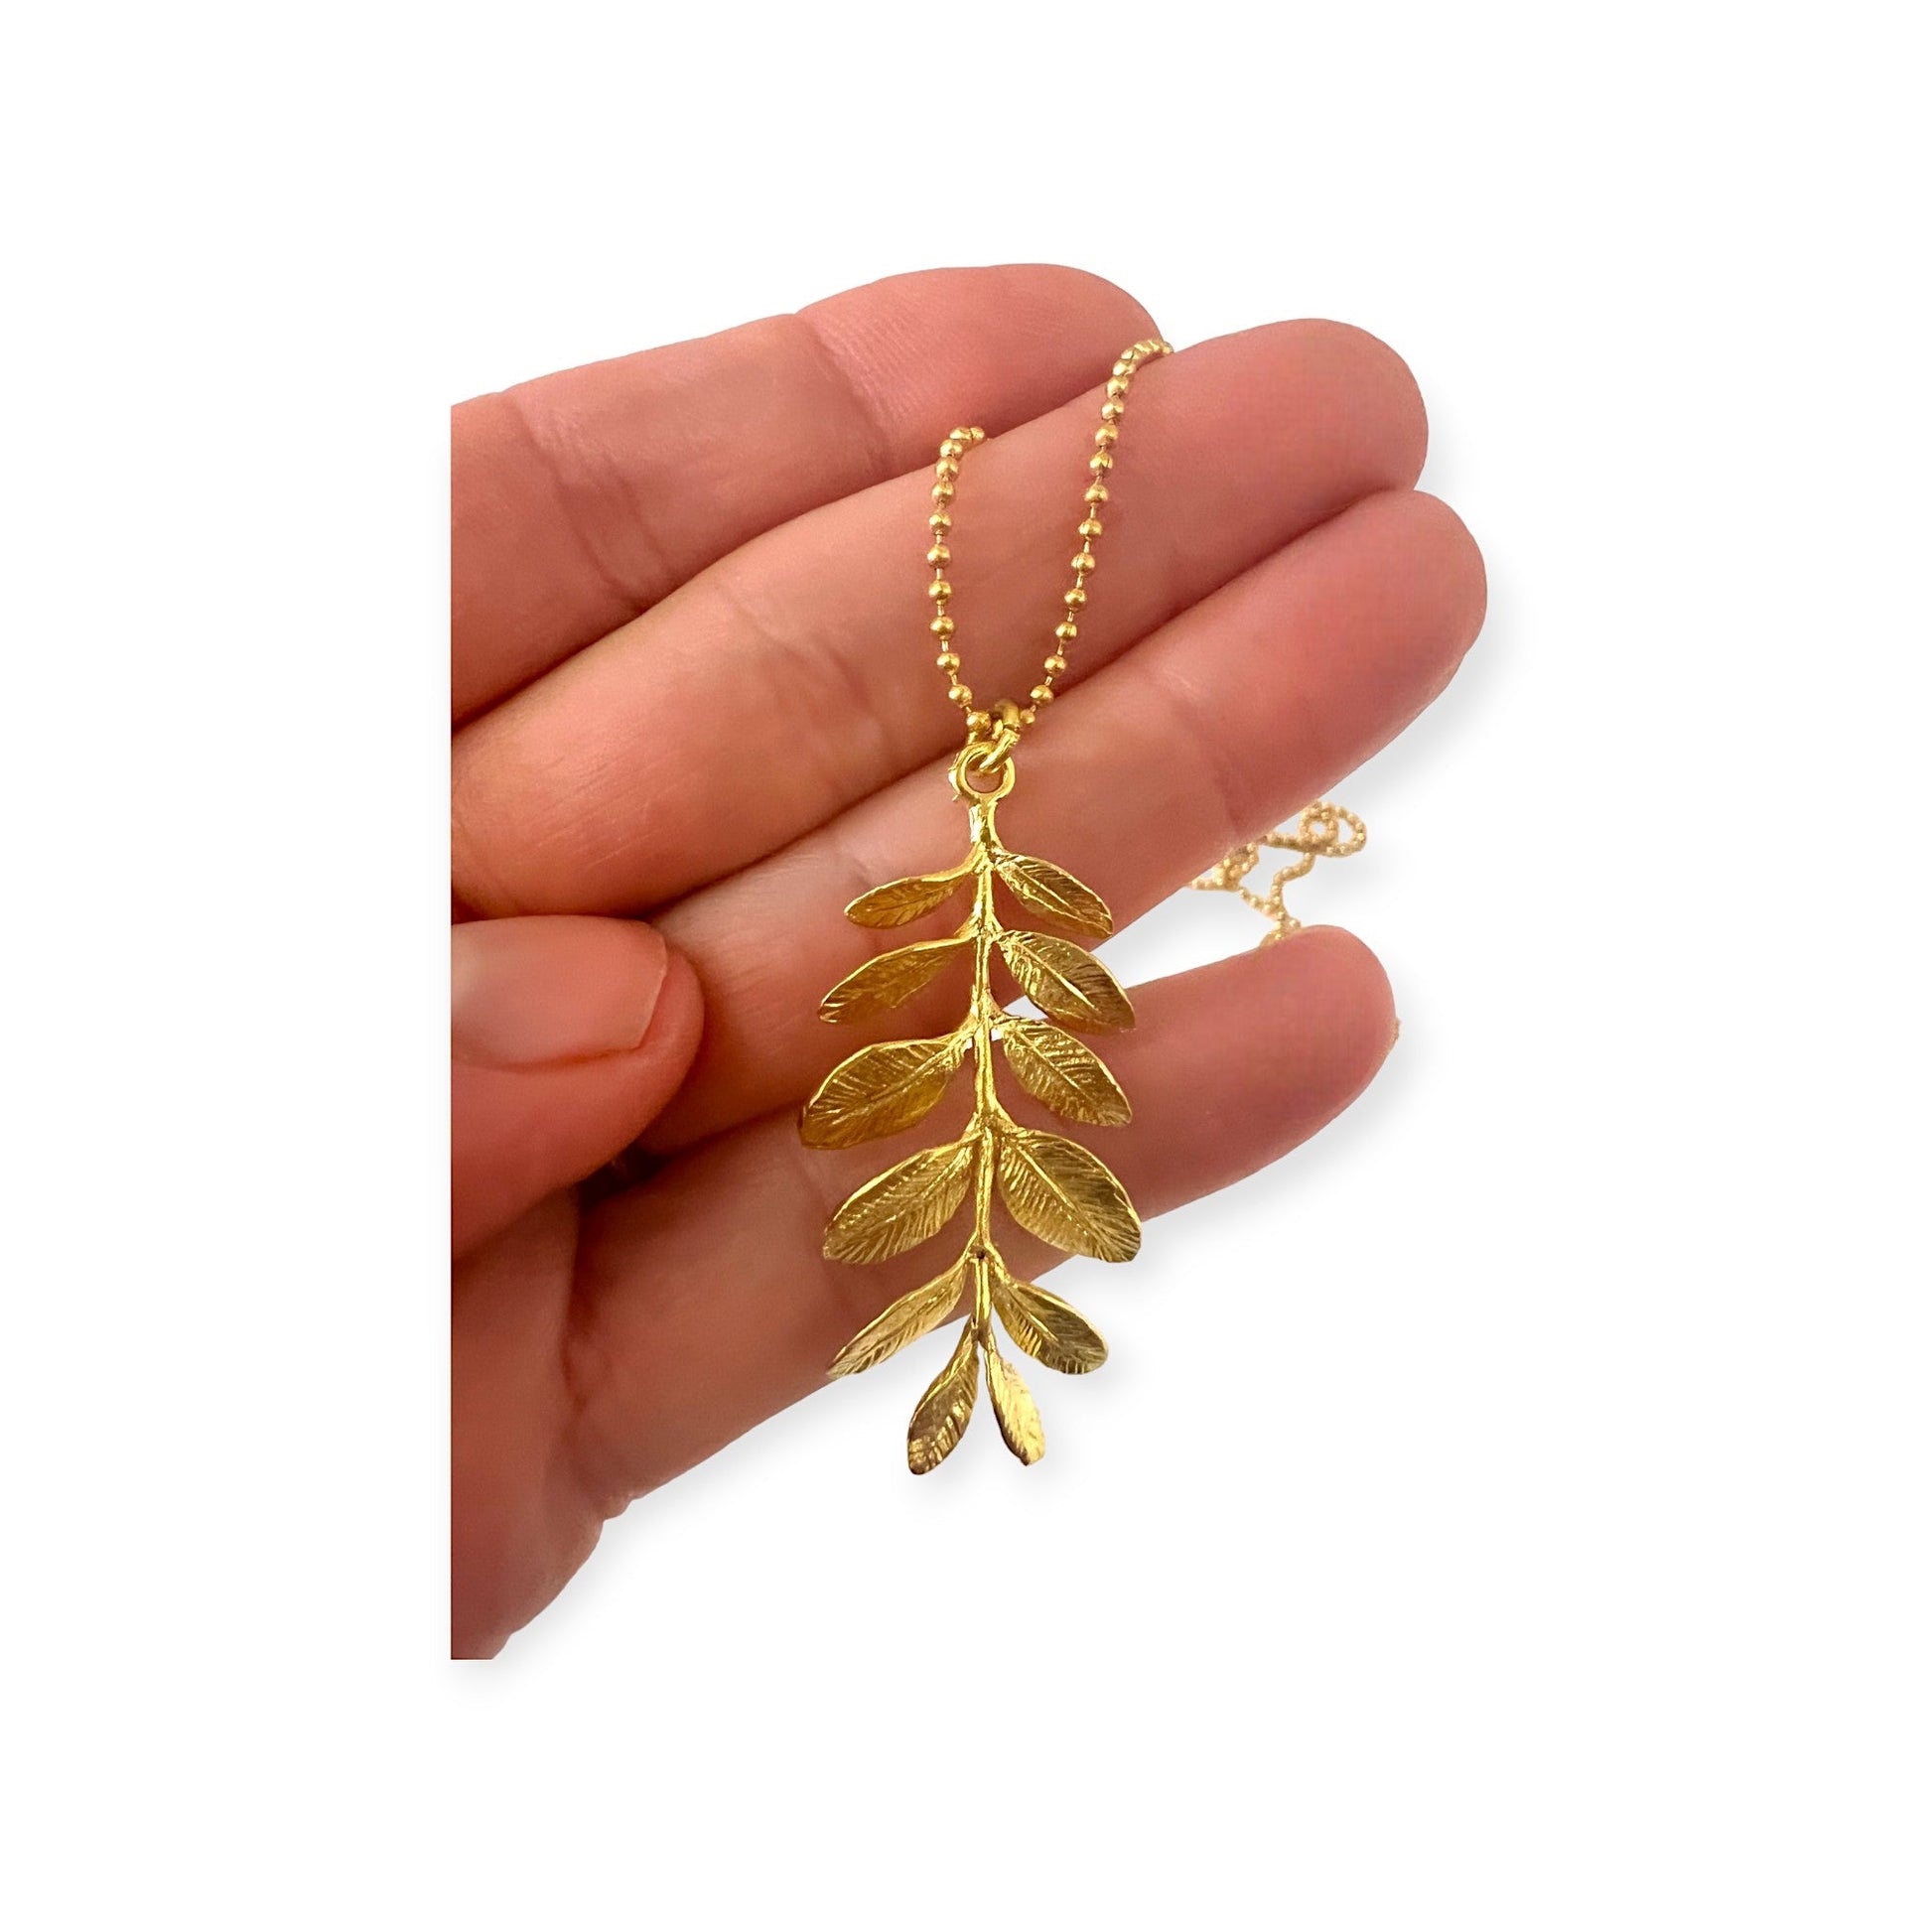 Delicate branch pendant necklace - Sundara Joon